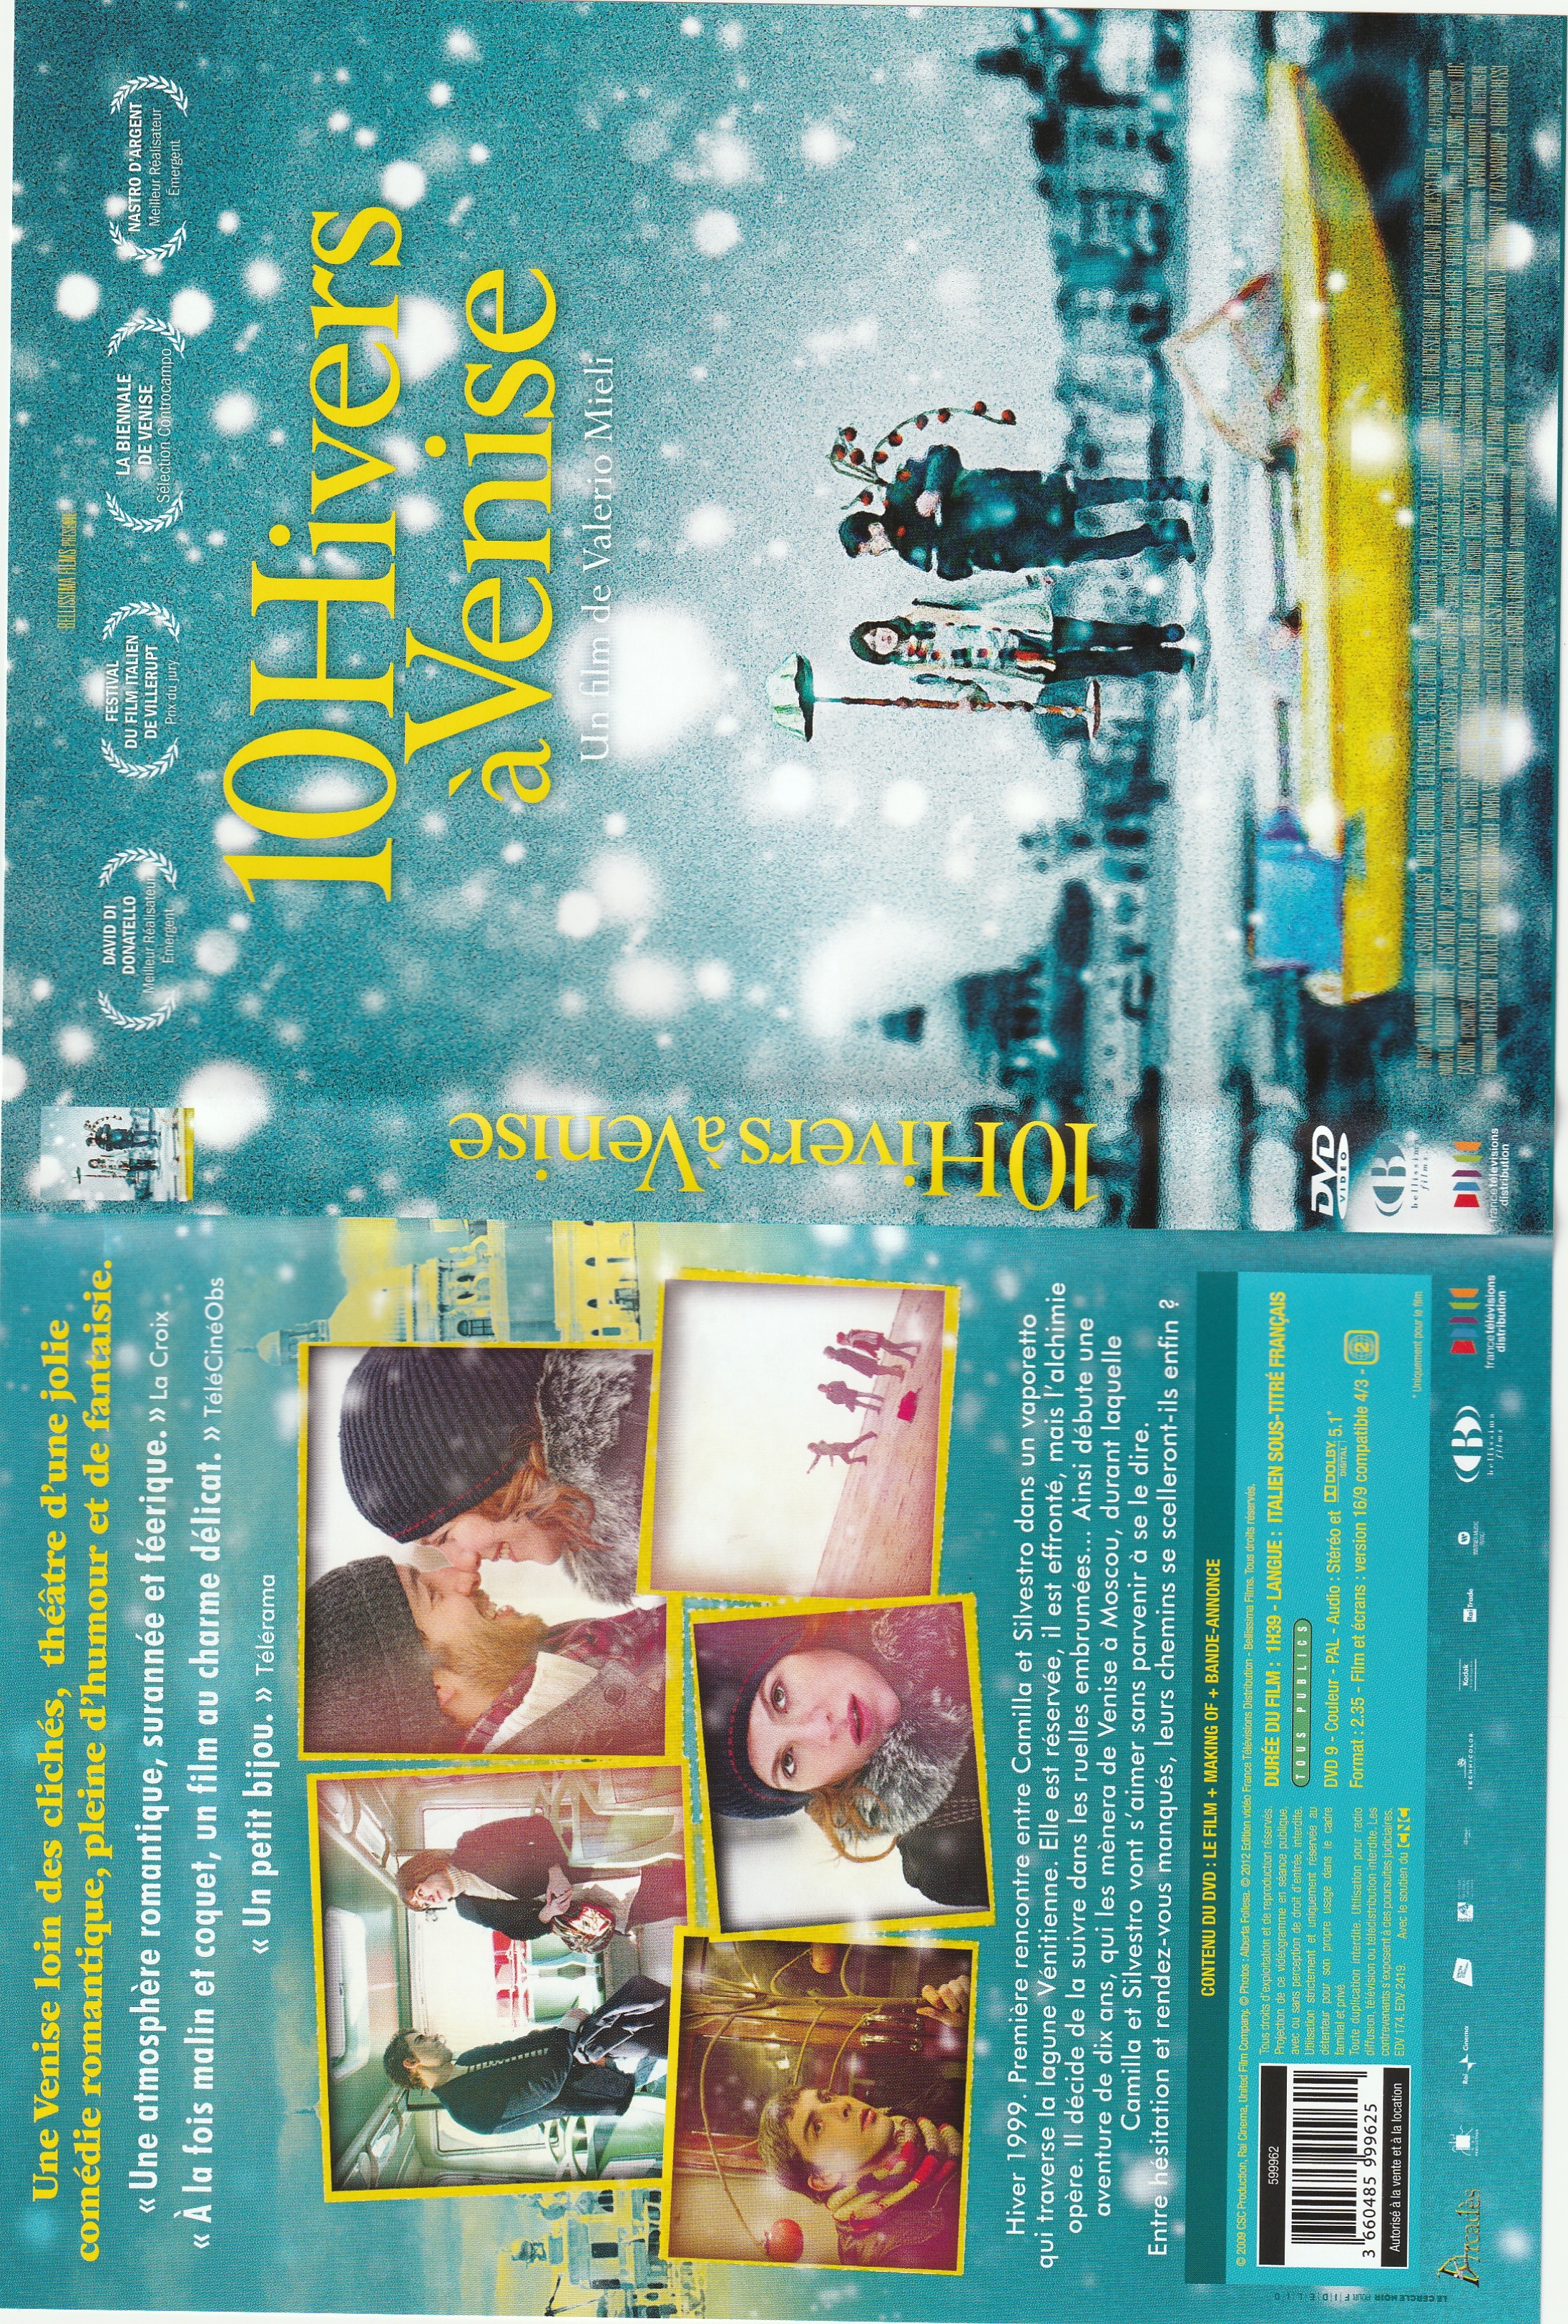 Jaquette DVD 10 hivers  Venise